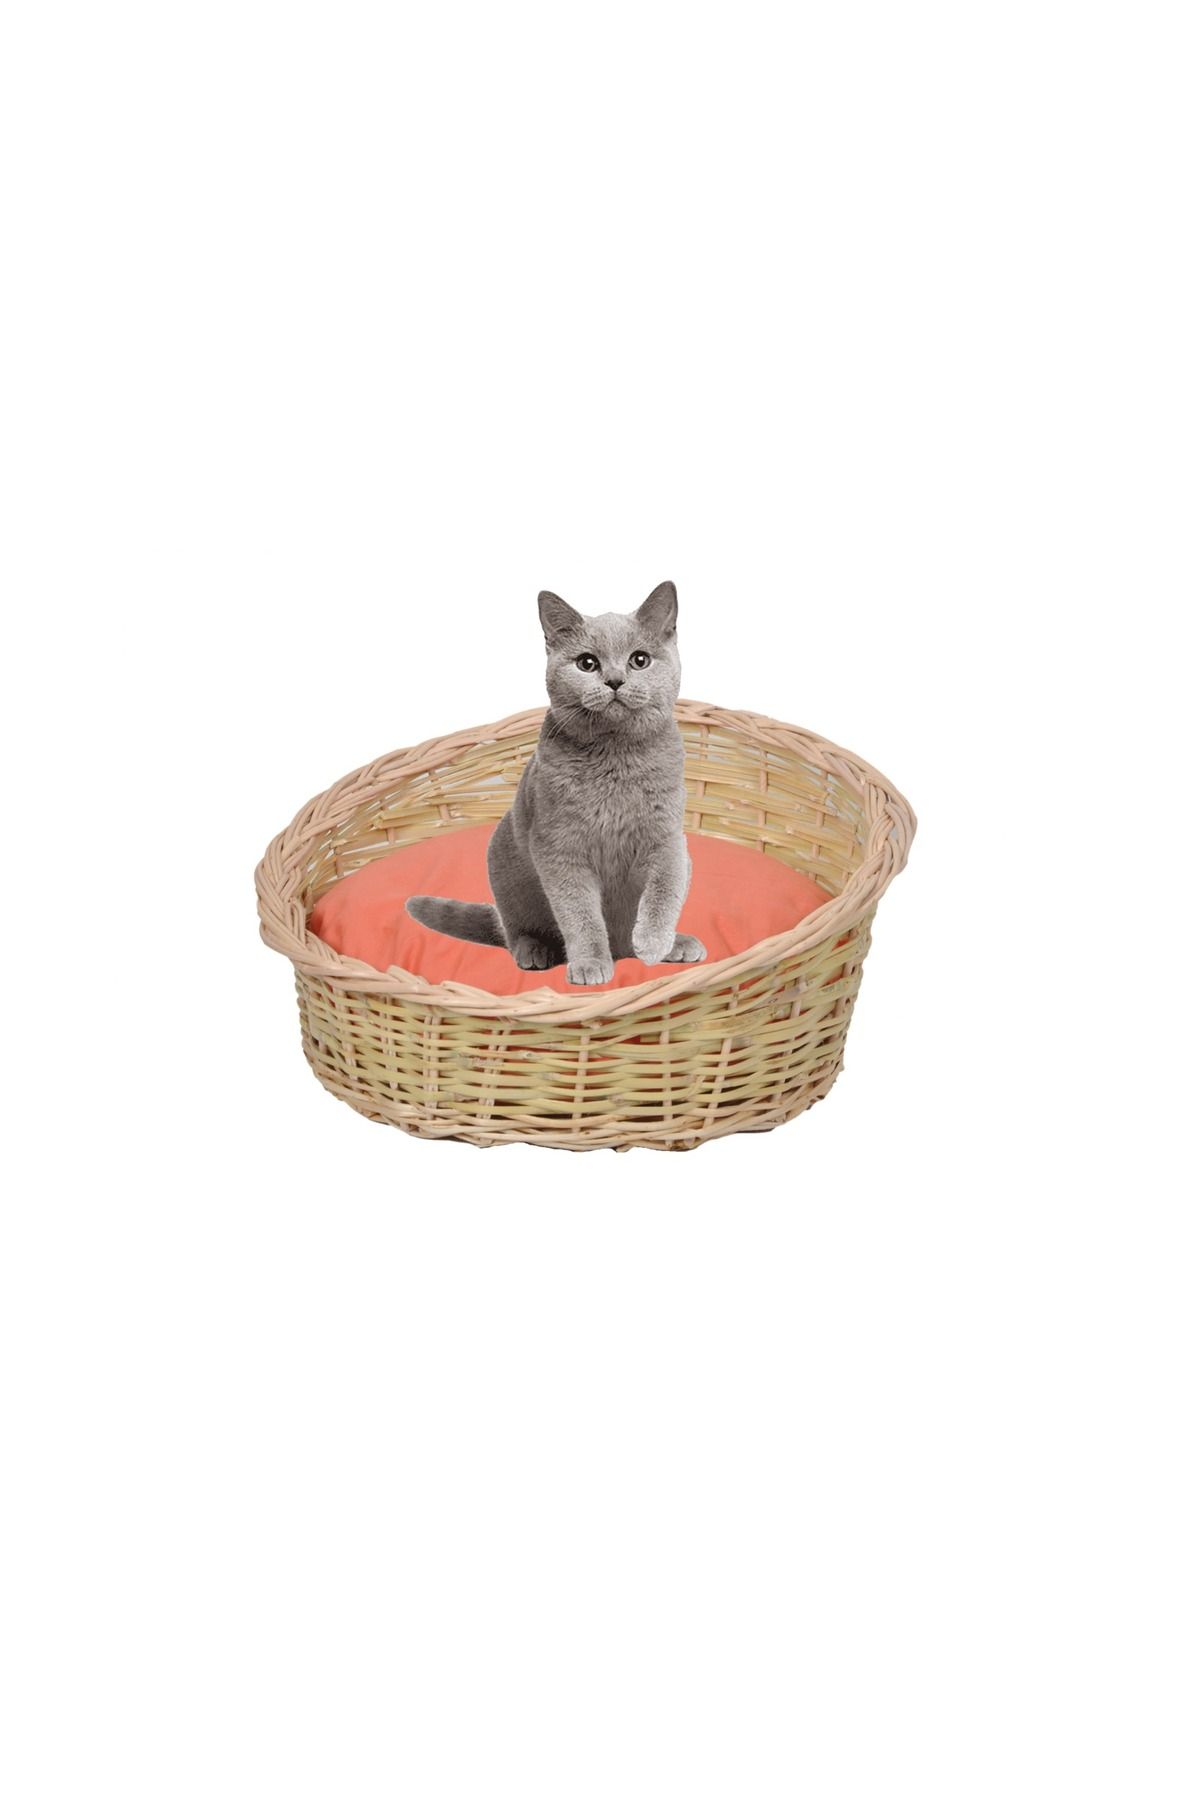 tunalar Hasır Kedi Köpek Yatağı Turuncu Minder Hediyeli Renkli El Yapımı Hasır 40 Cm